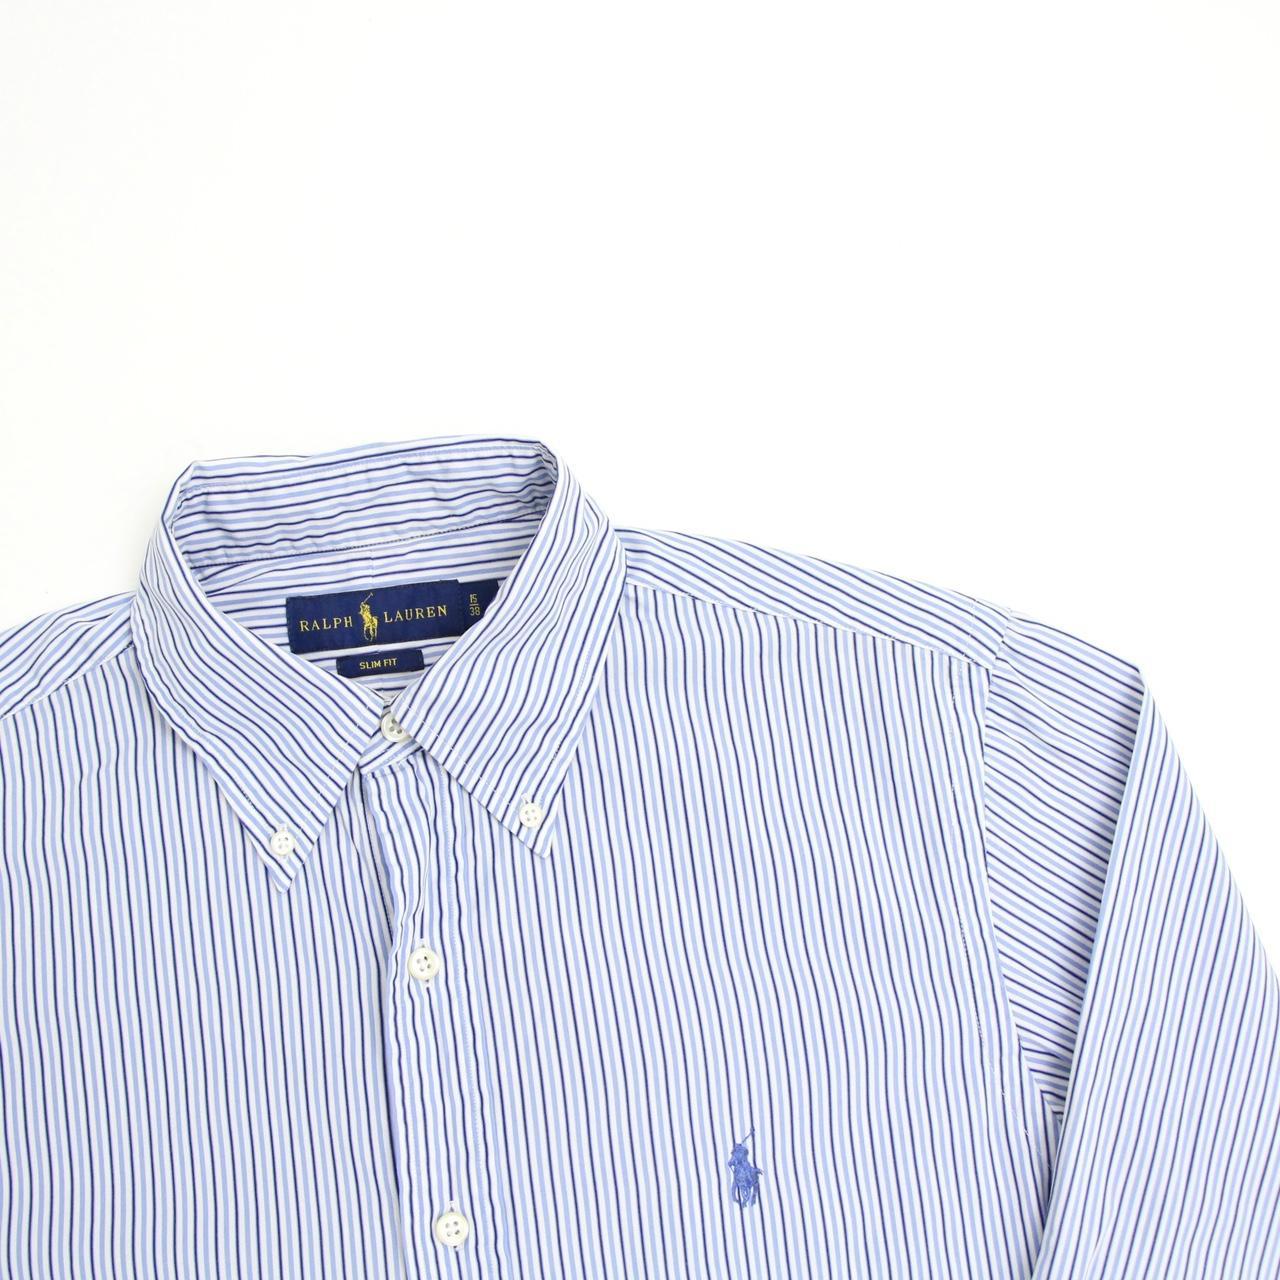 Vintage pale blue striped Ralph Lauren shirt Men’s... - Depop